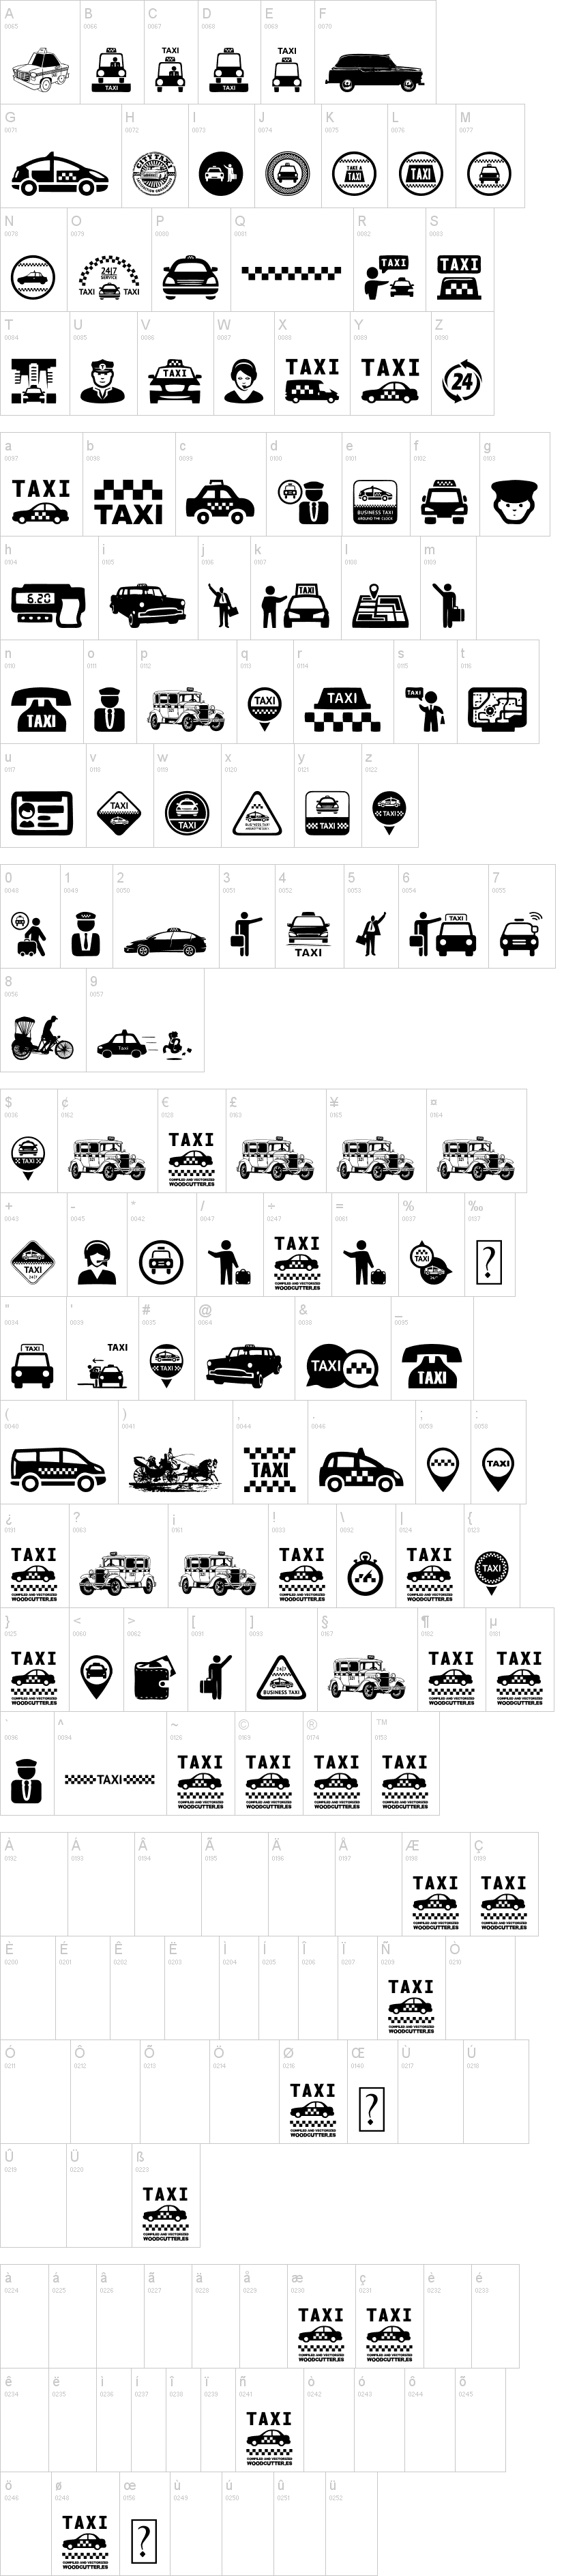 Taxi字符映射图